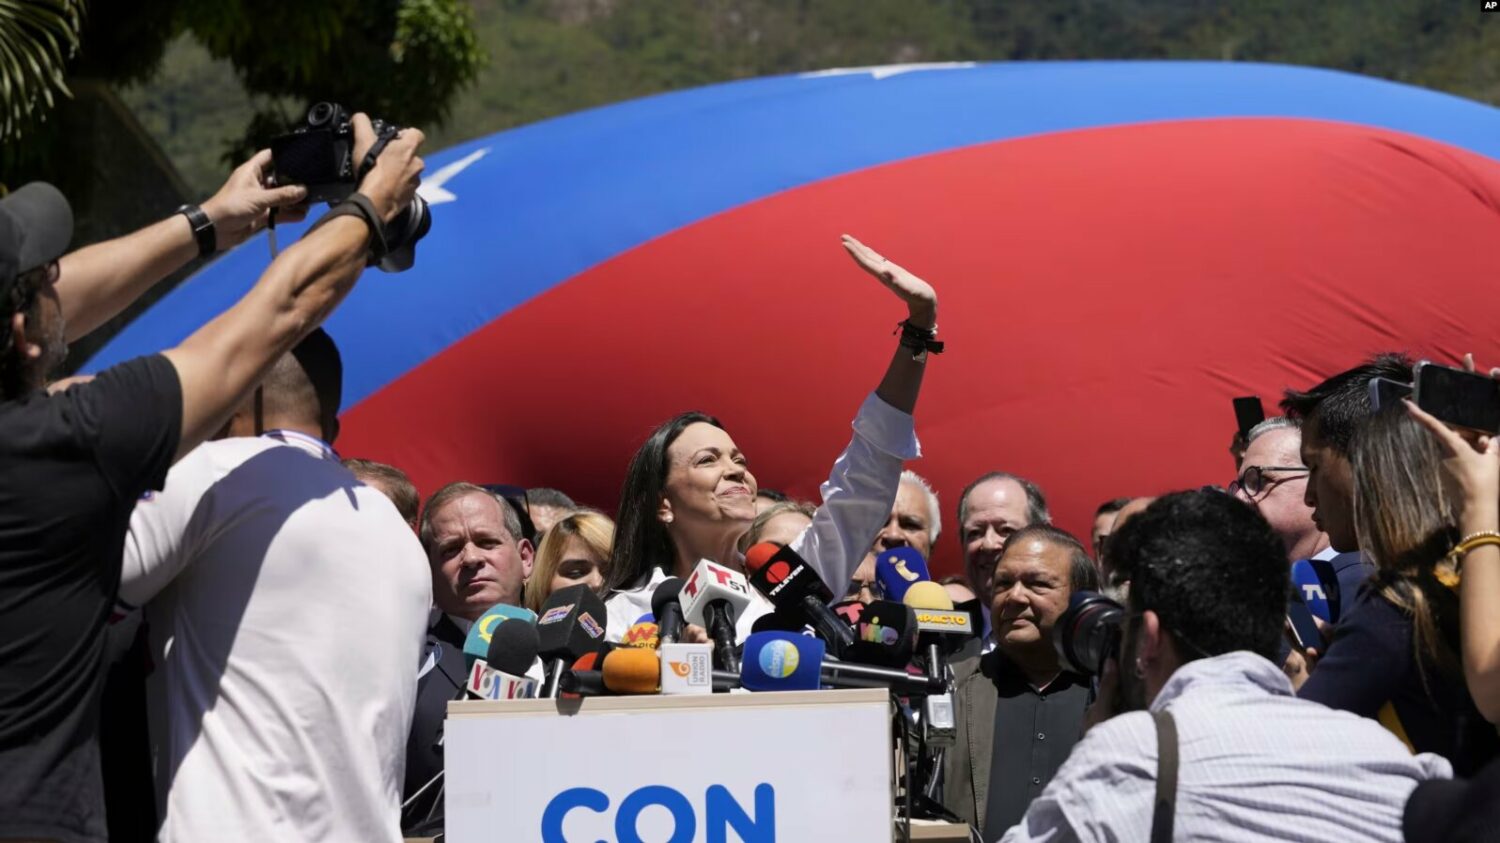 La candidata presidencial, María Corina Machado, junto a miembros de la Plataforma Unitaria de la oposición ofrece una conferencia de prensa en Caracas, Venezuela. (AP Photo/Ariana Cubillos)